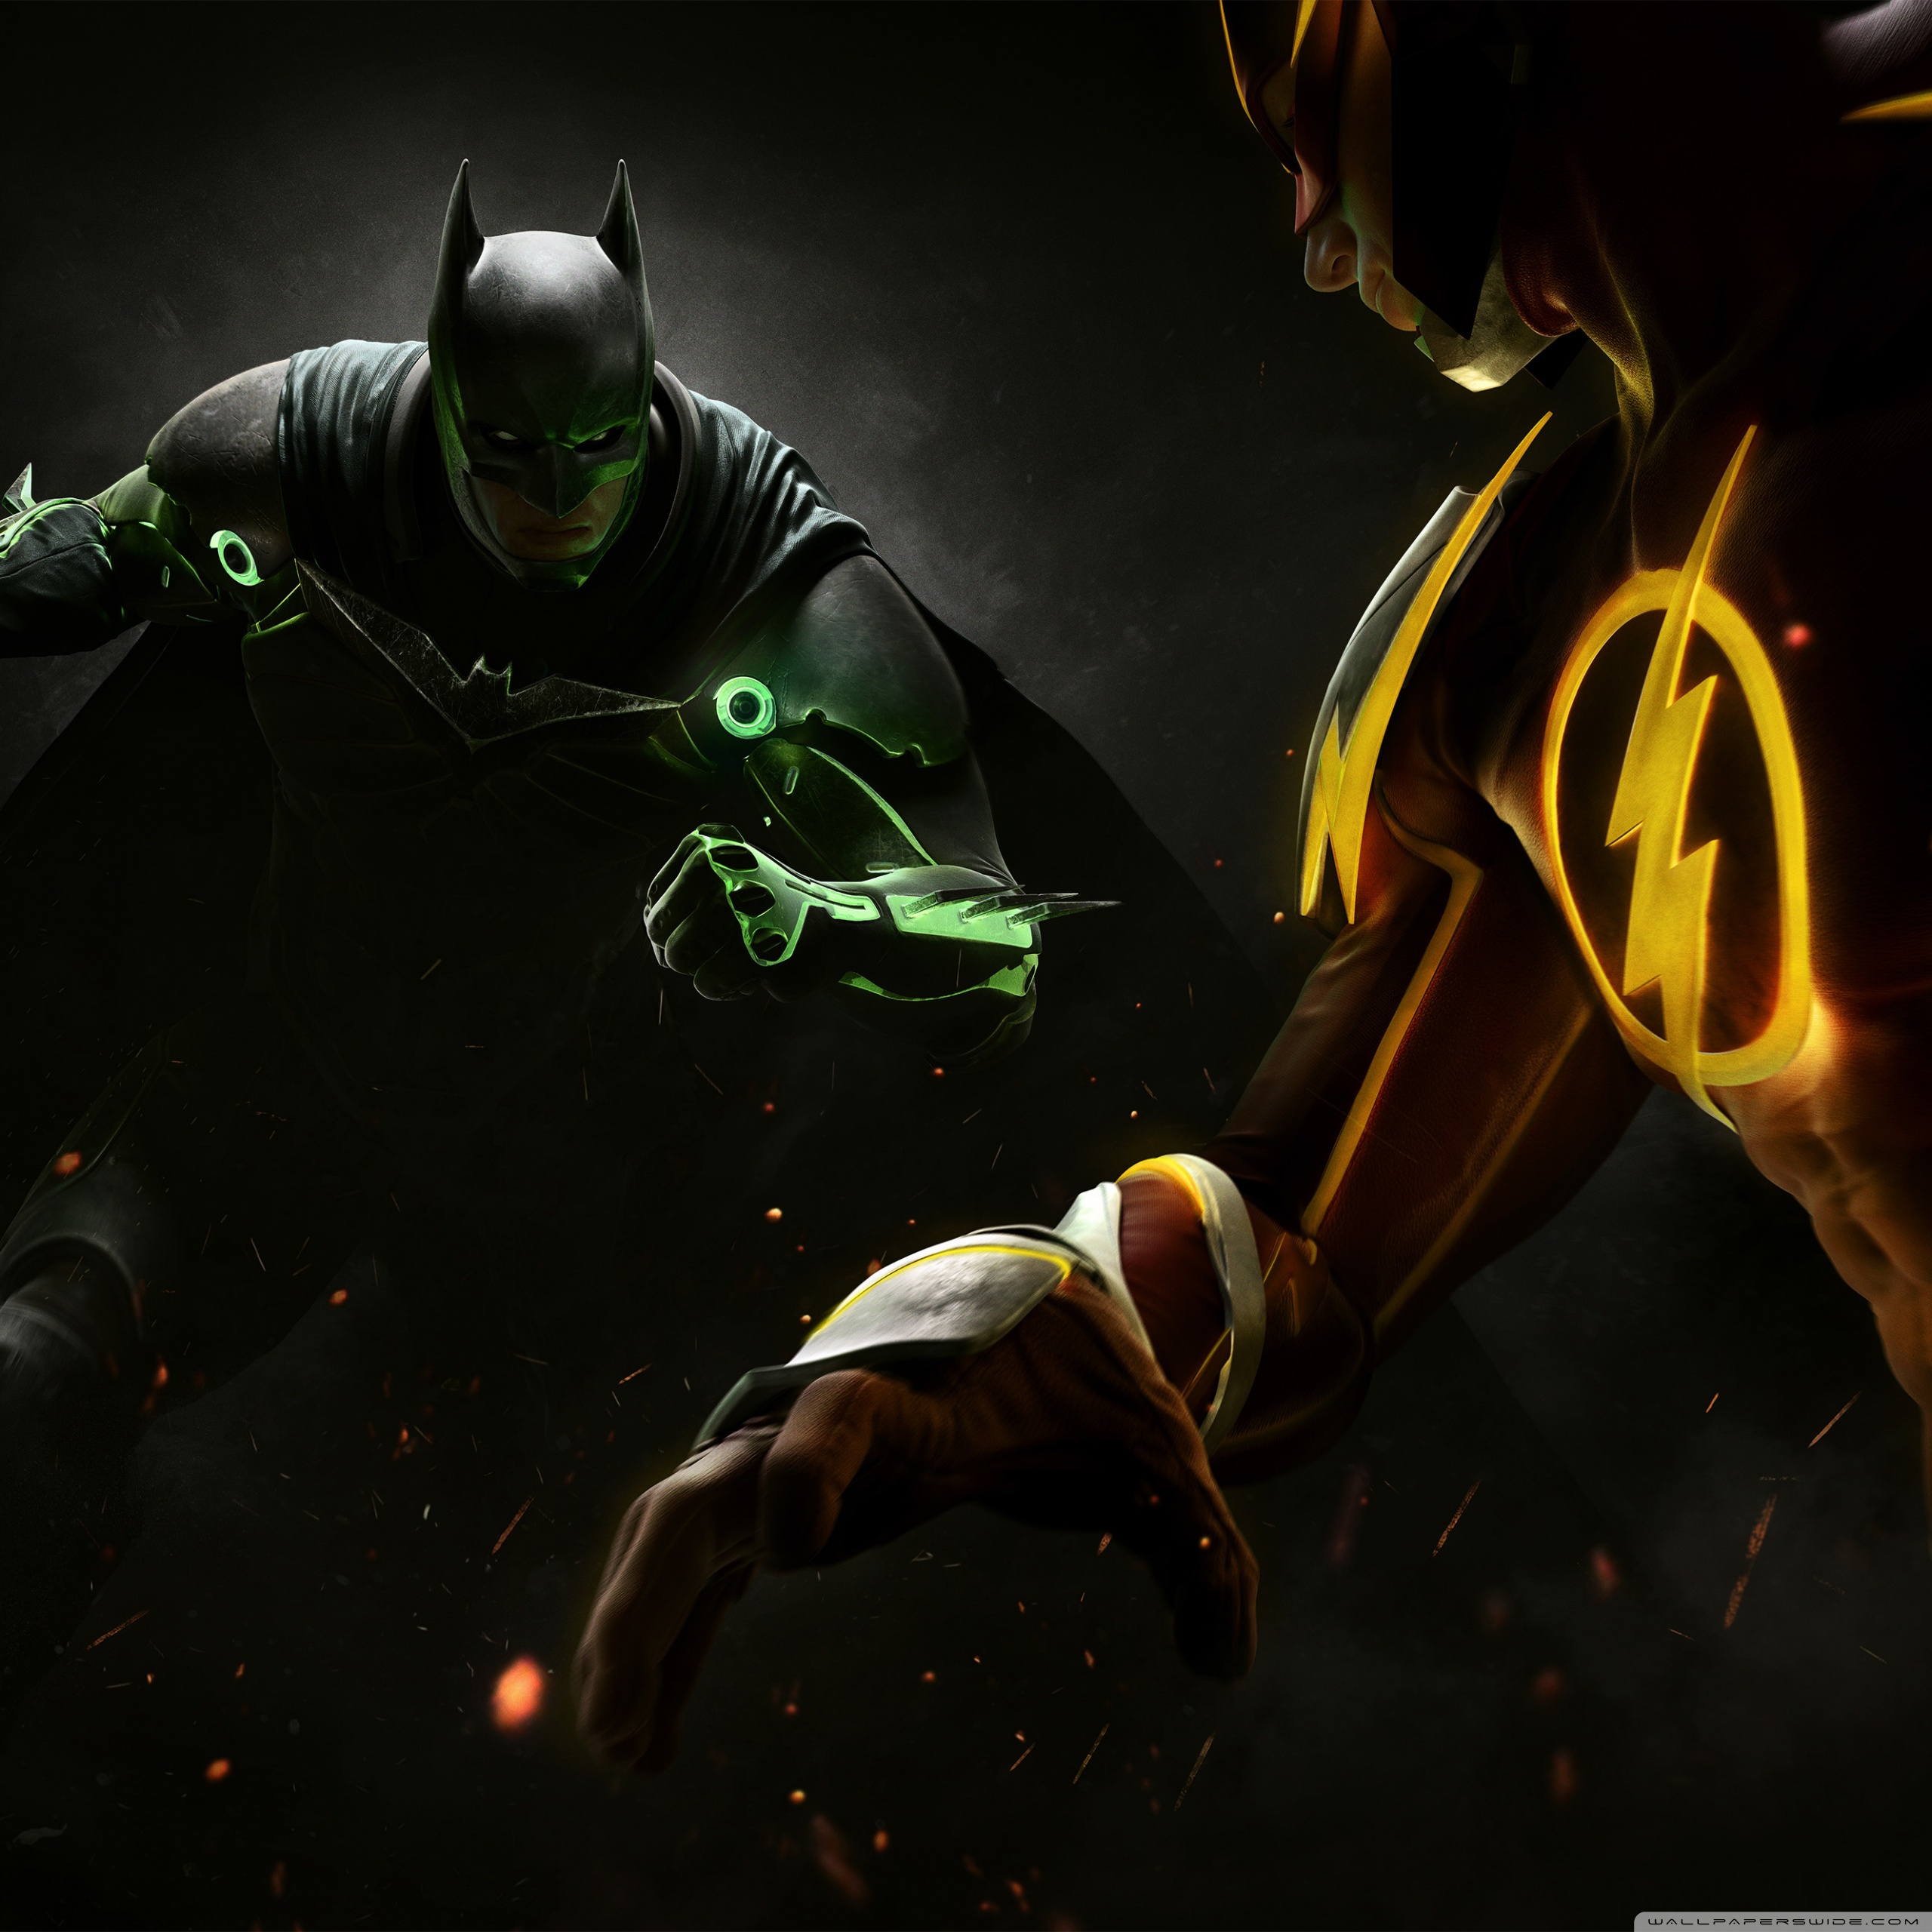 Ipad - Gif Batman Injustice 2 , HD Wallpaper & Backgrounds